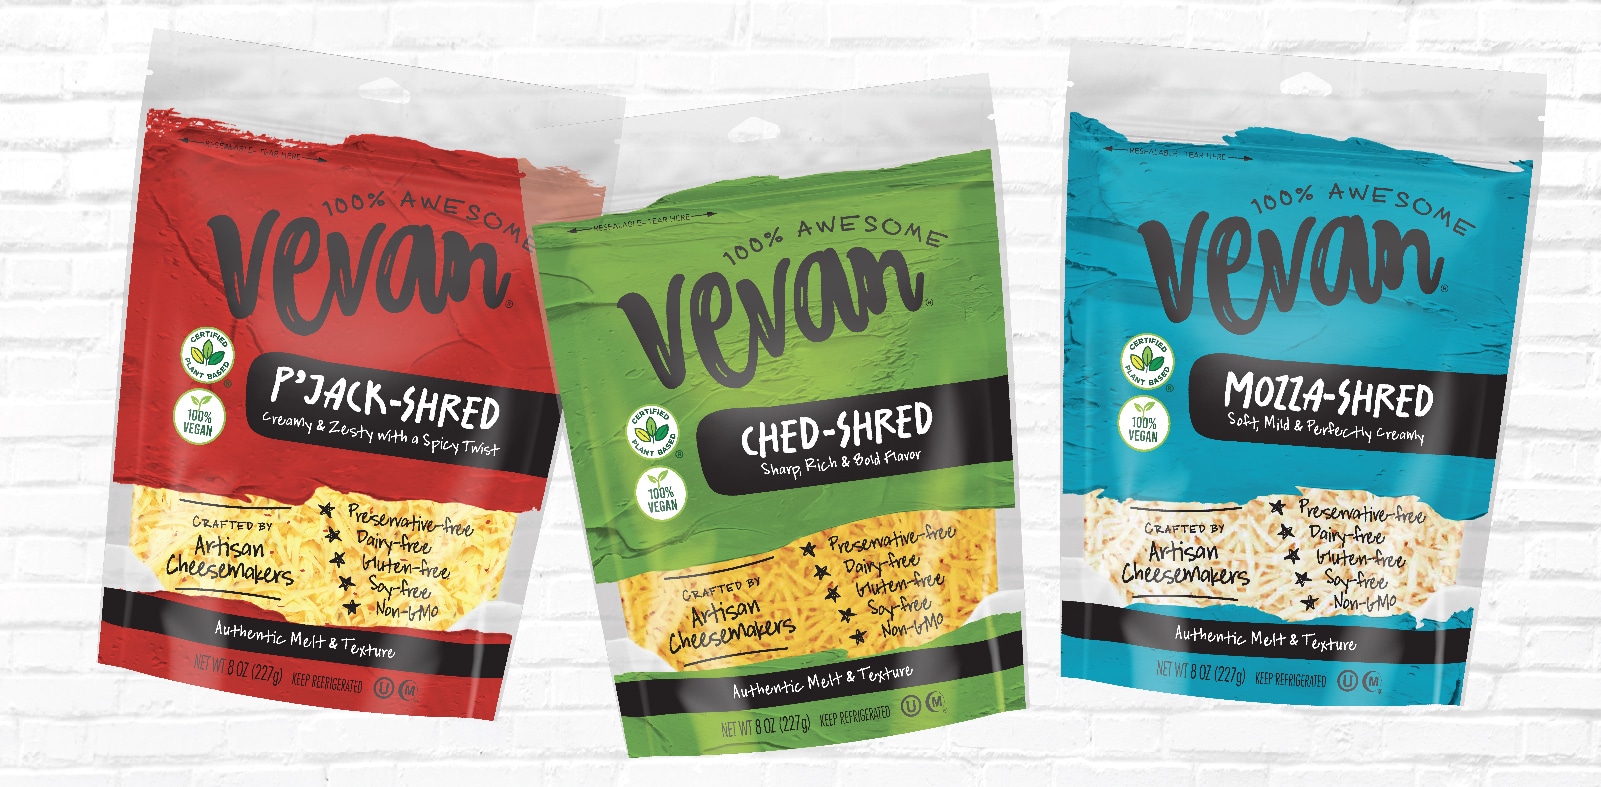 Vevan Vegan cheese colorful food packaging design